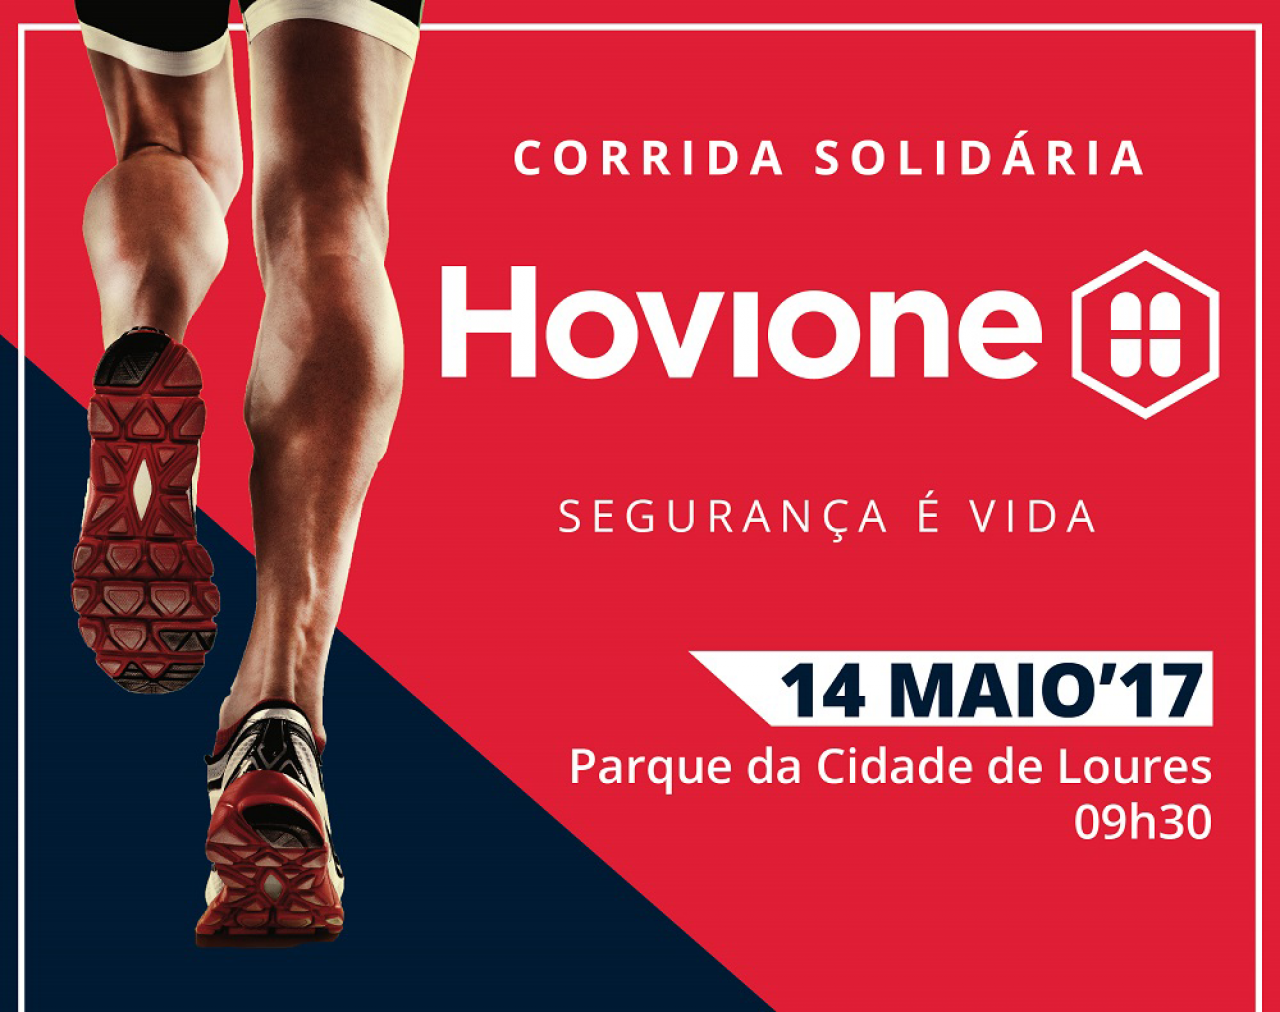 corrida-solidaria-hovione-header